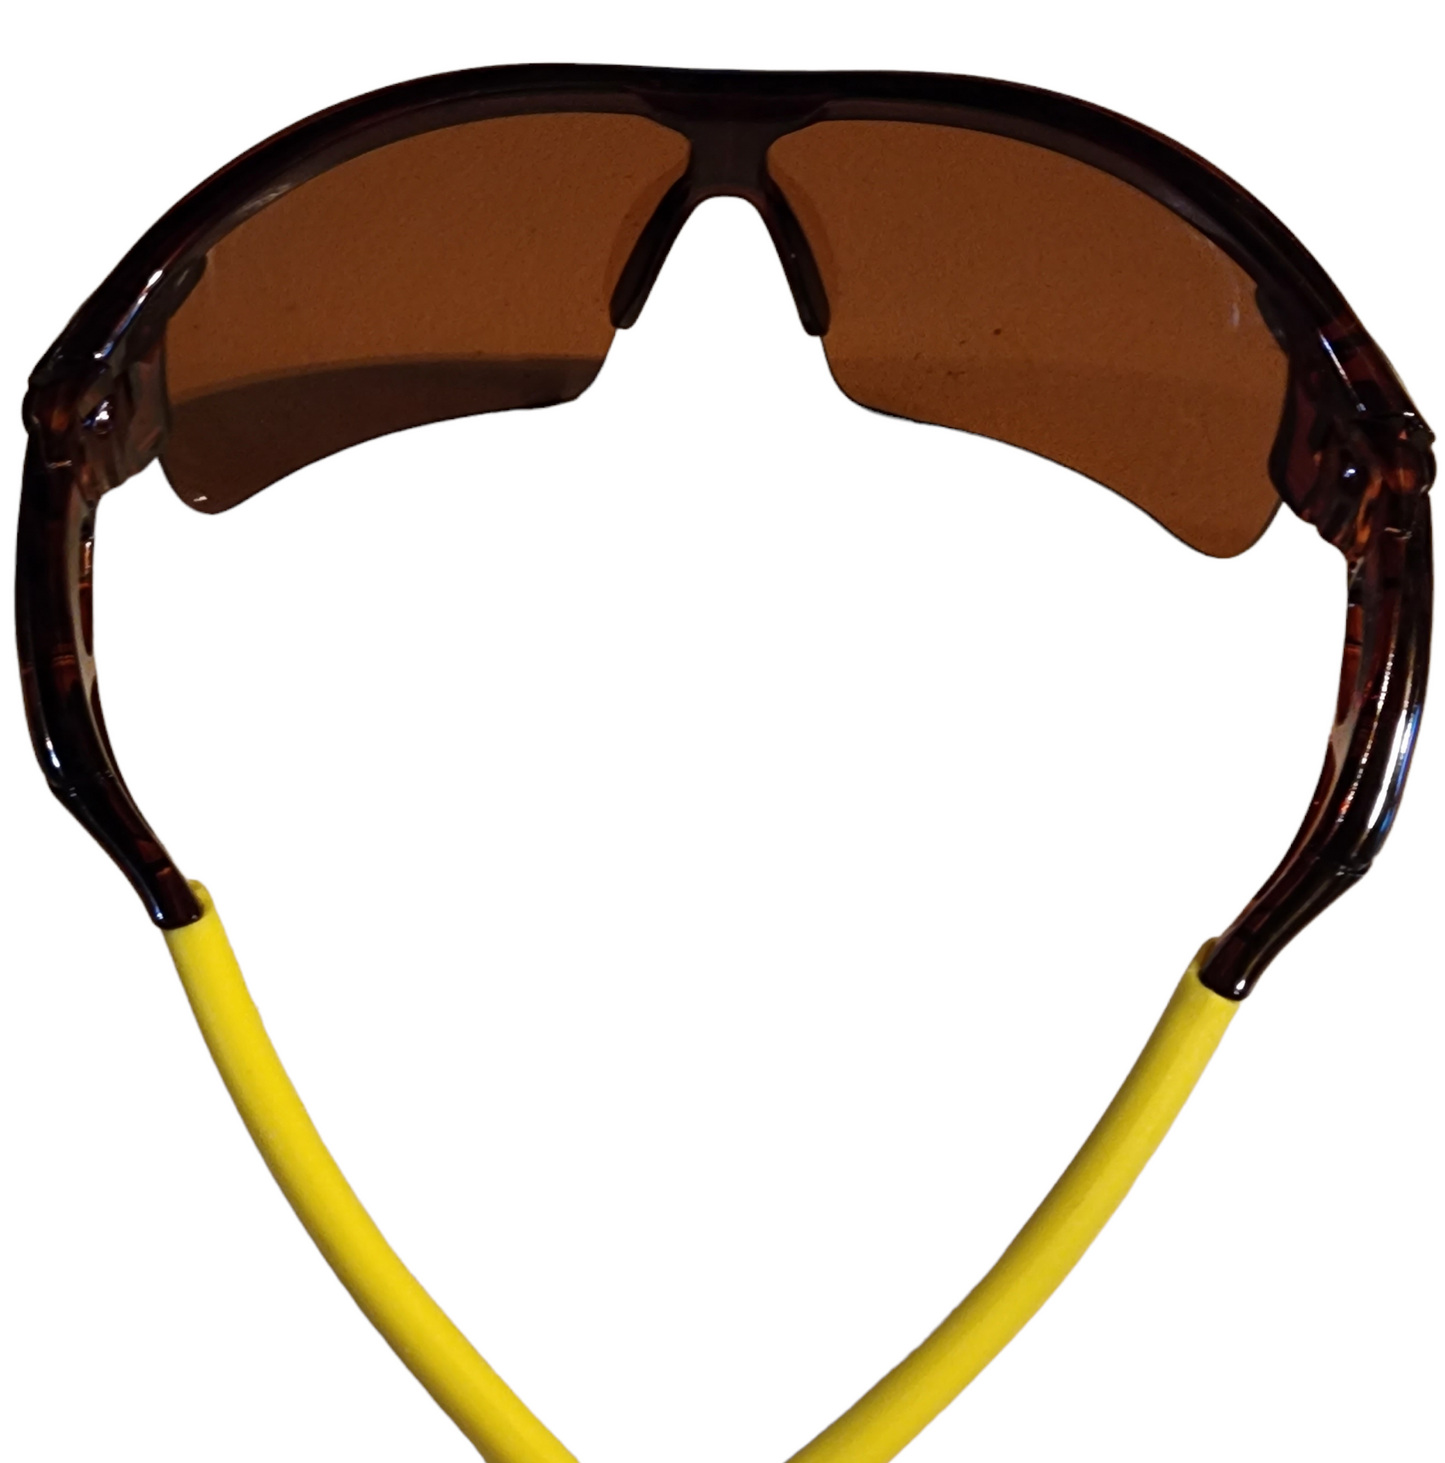 Sunglasses (yellow-brown)